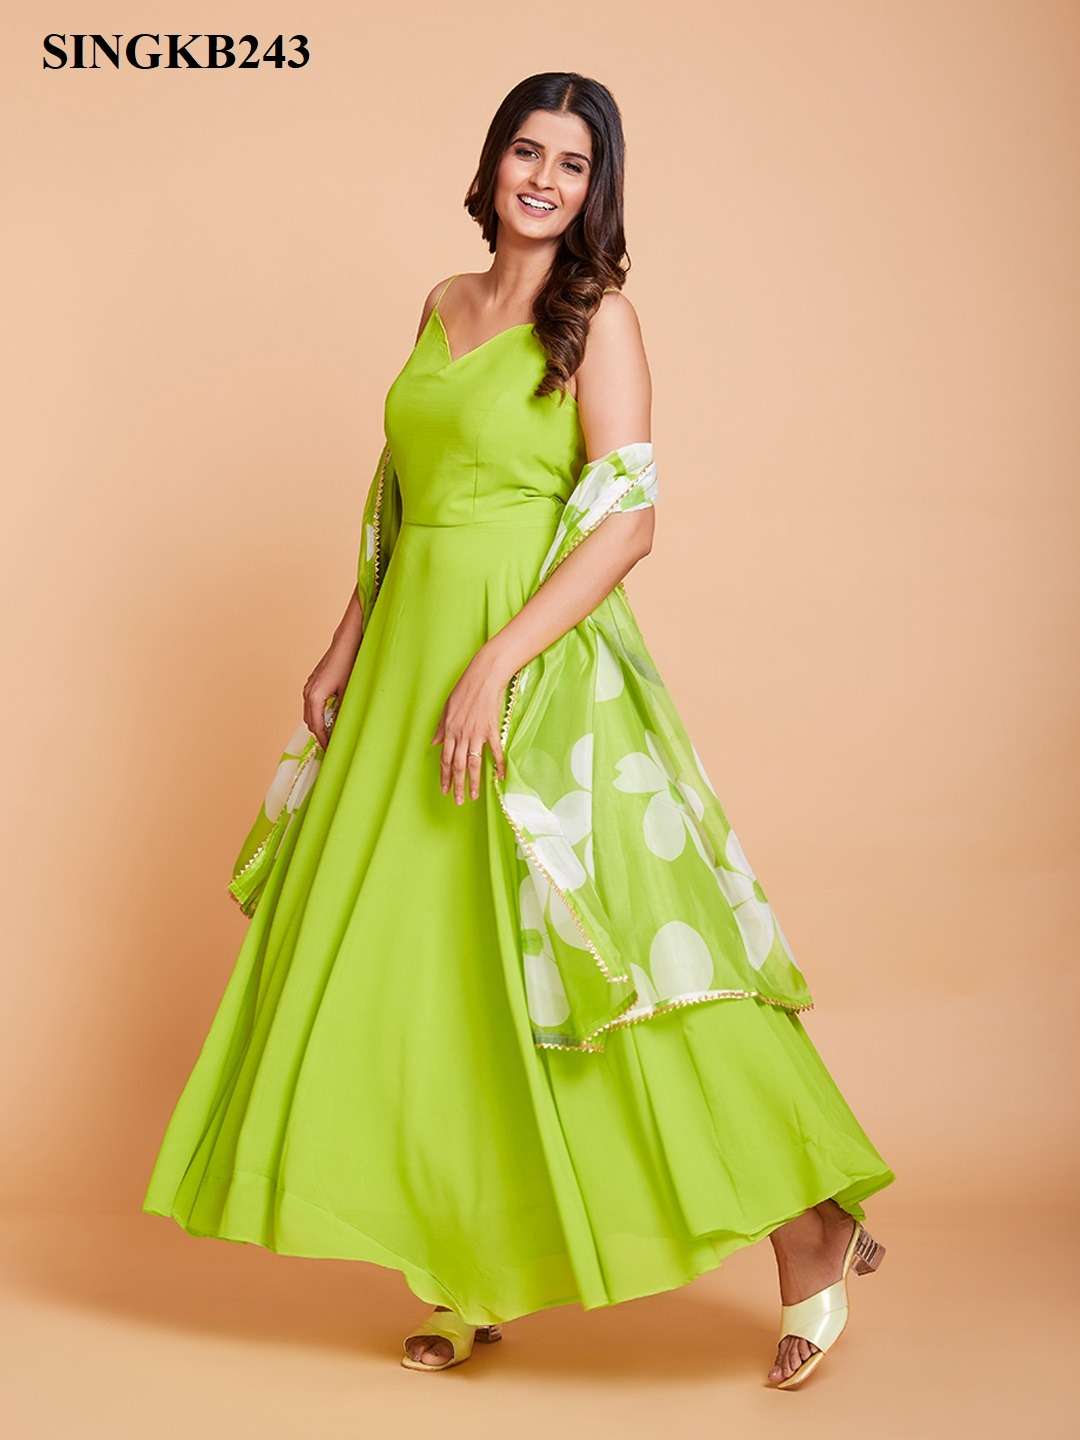 Arya Designs Singkb 243 Traditional Wear Anarakali Style Gown Dupatta New Designs